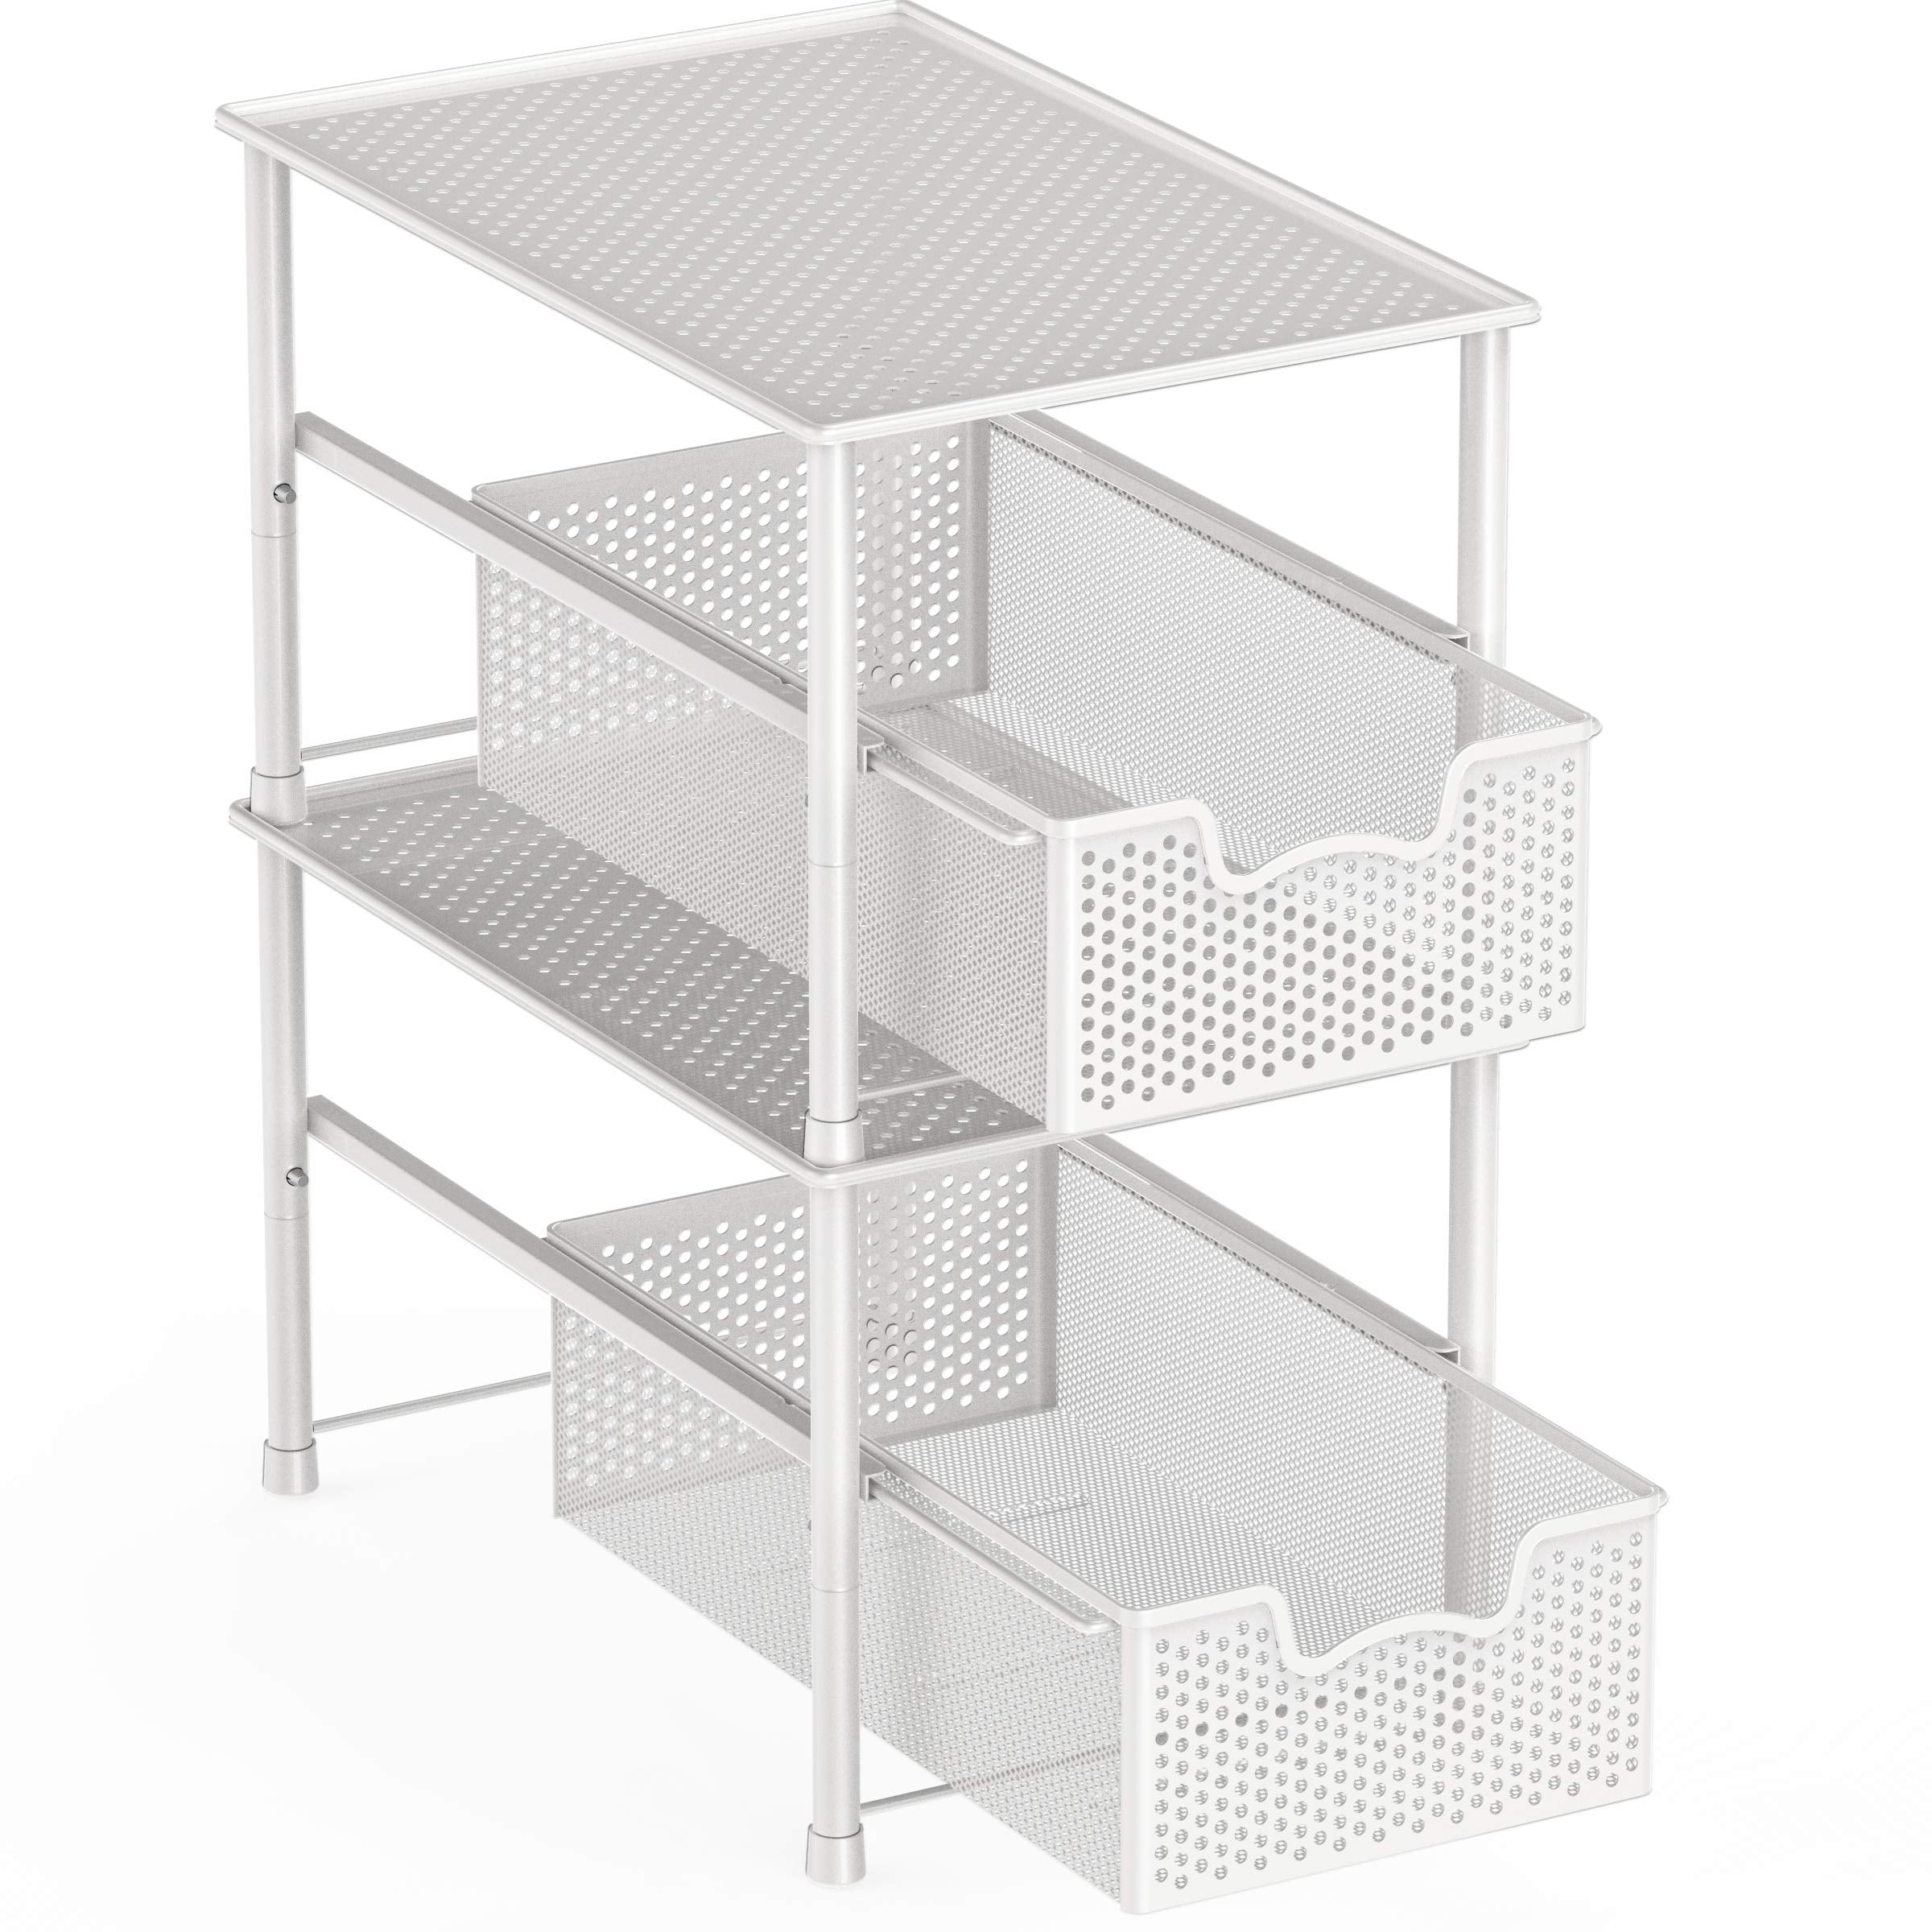 2 Tier Sliding Basket - Under Sink Organizer and Storage – Gray - 9 